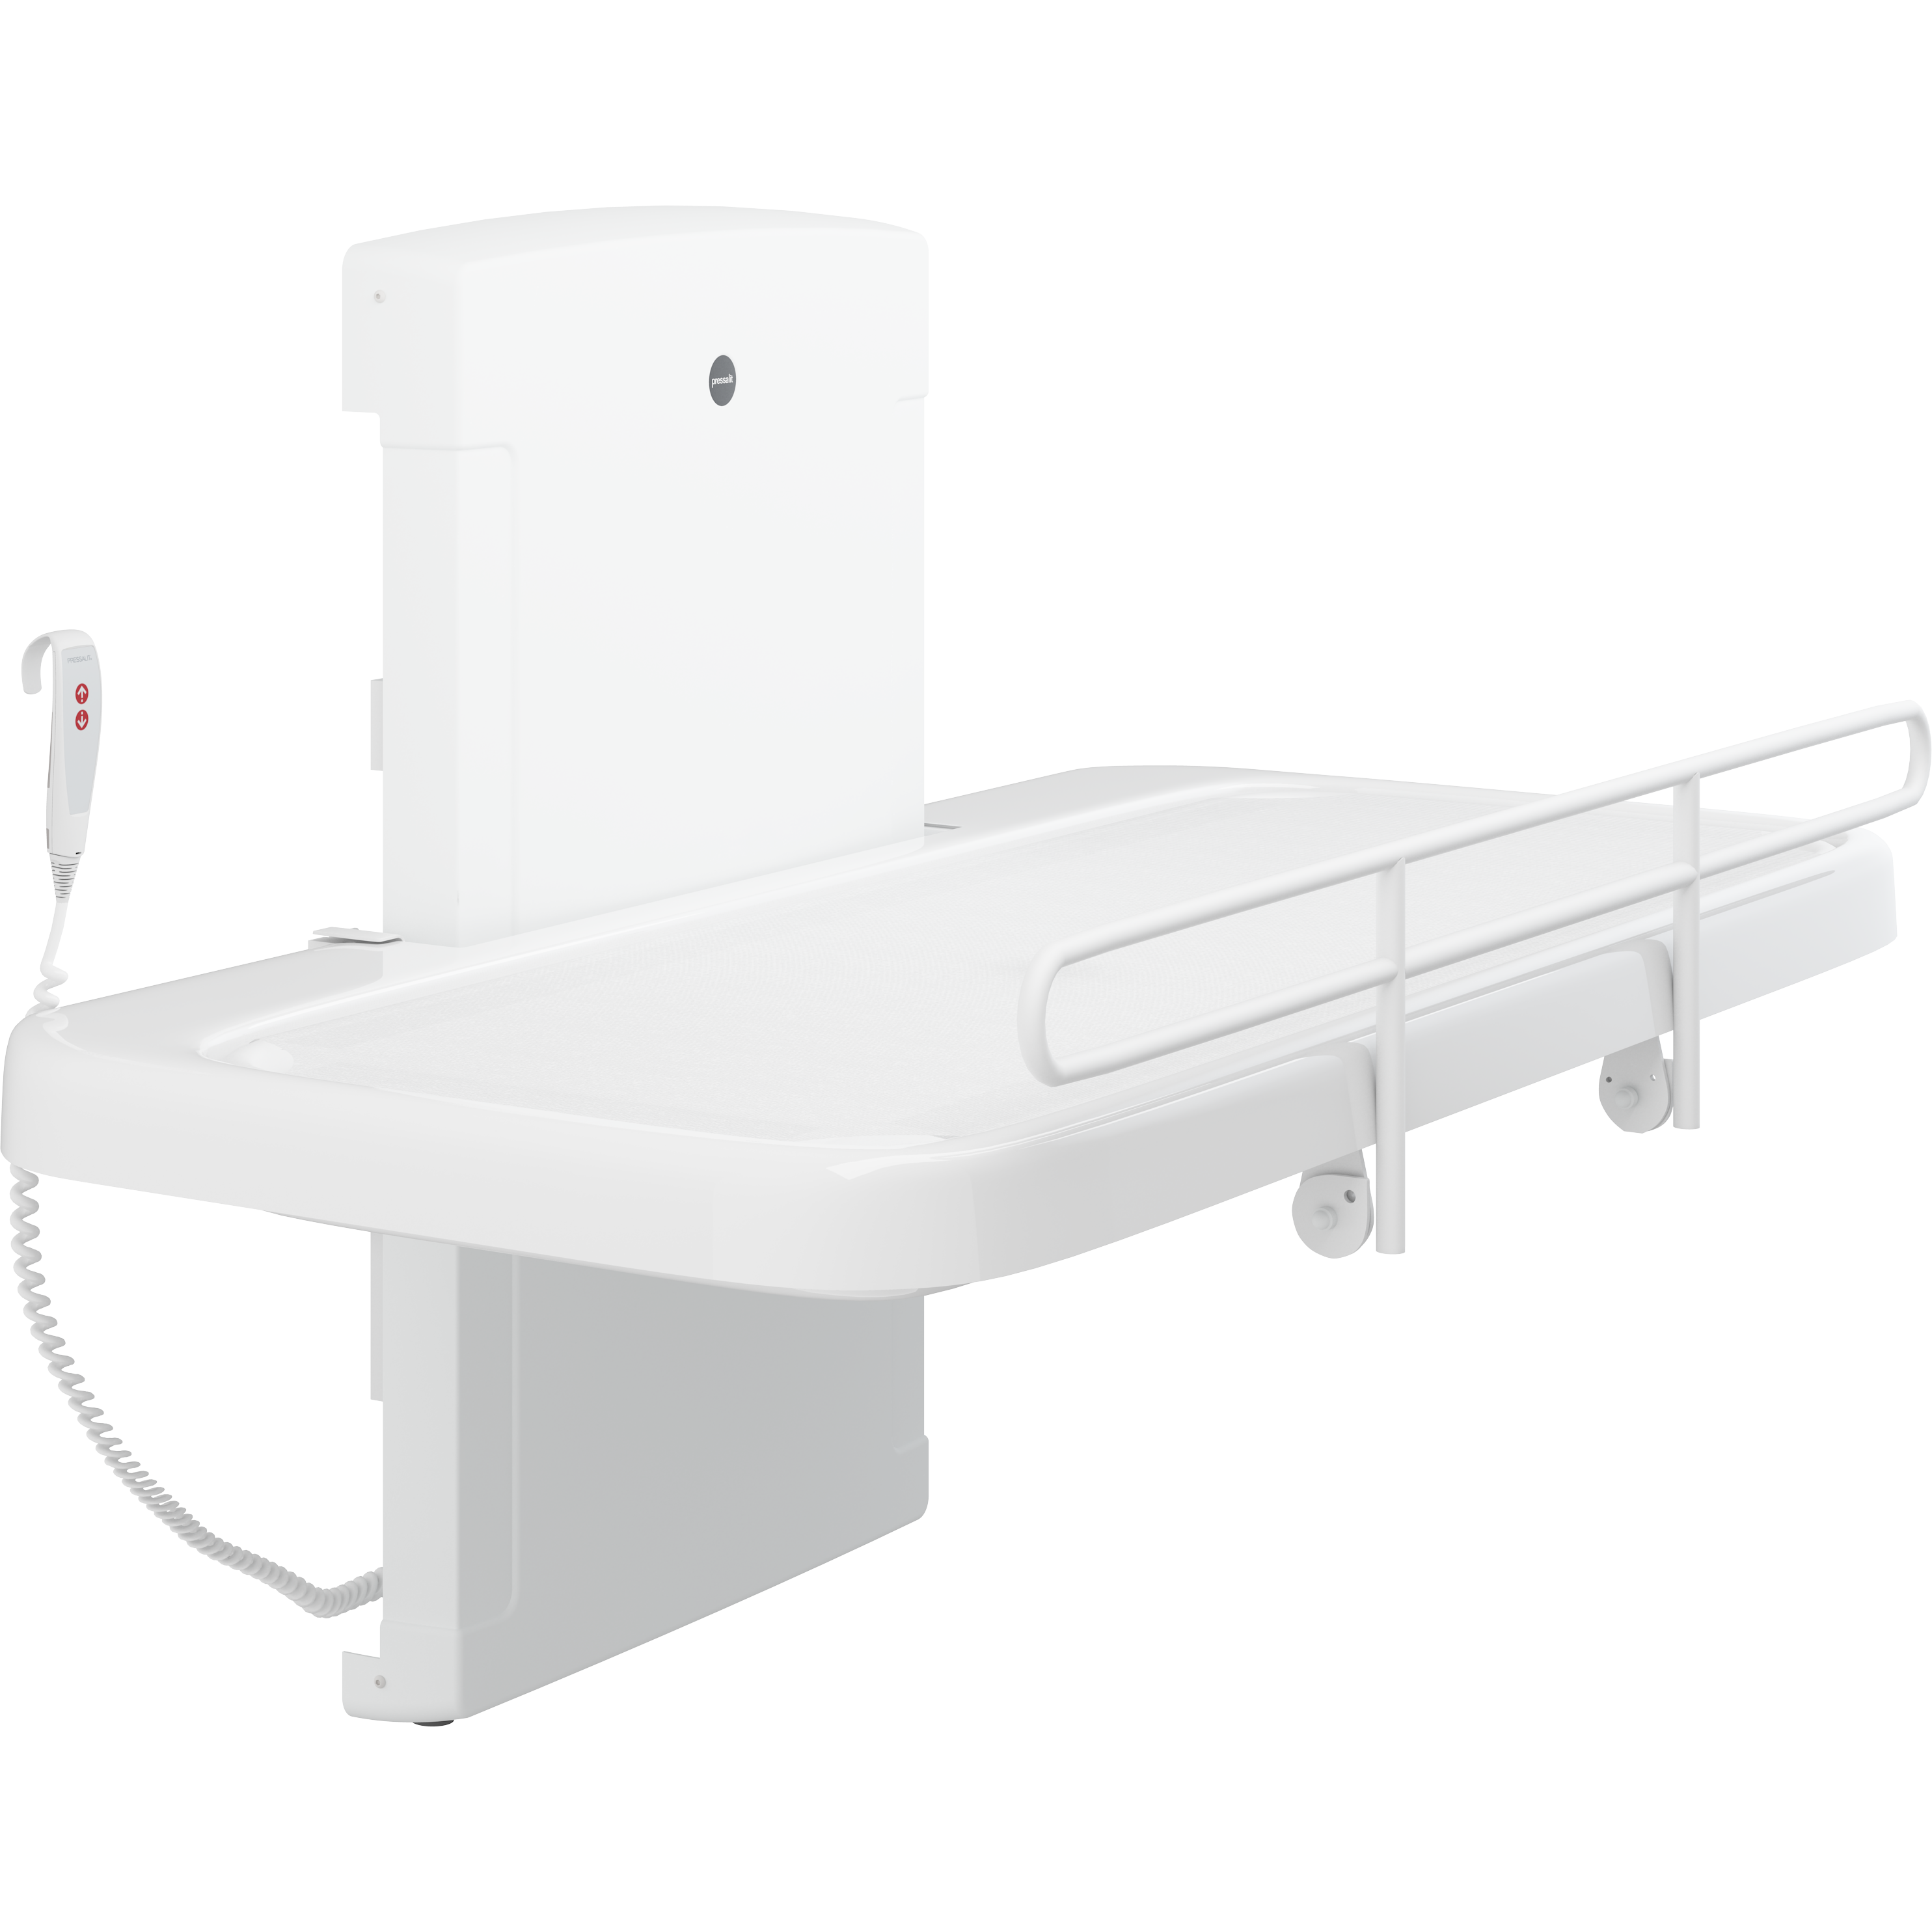 SCT 2000 table de douche, toile maillée, réglable en hauteur électriquement